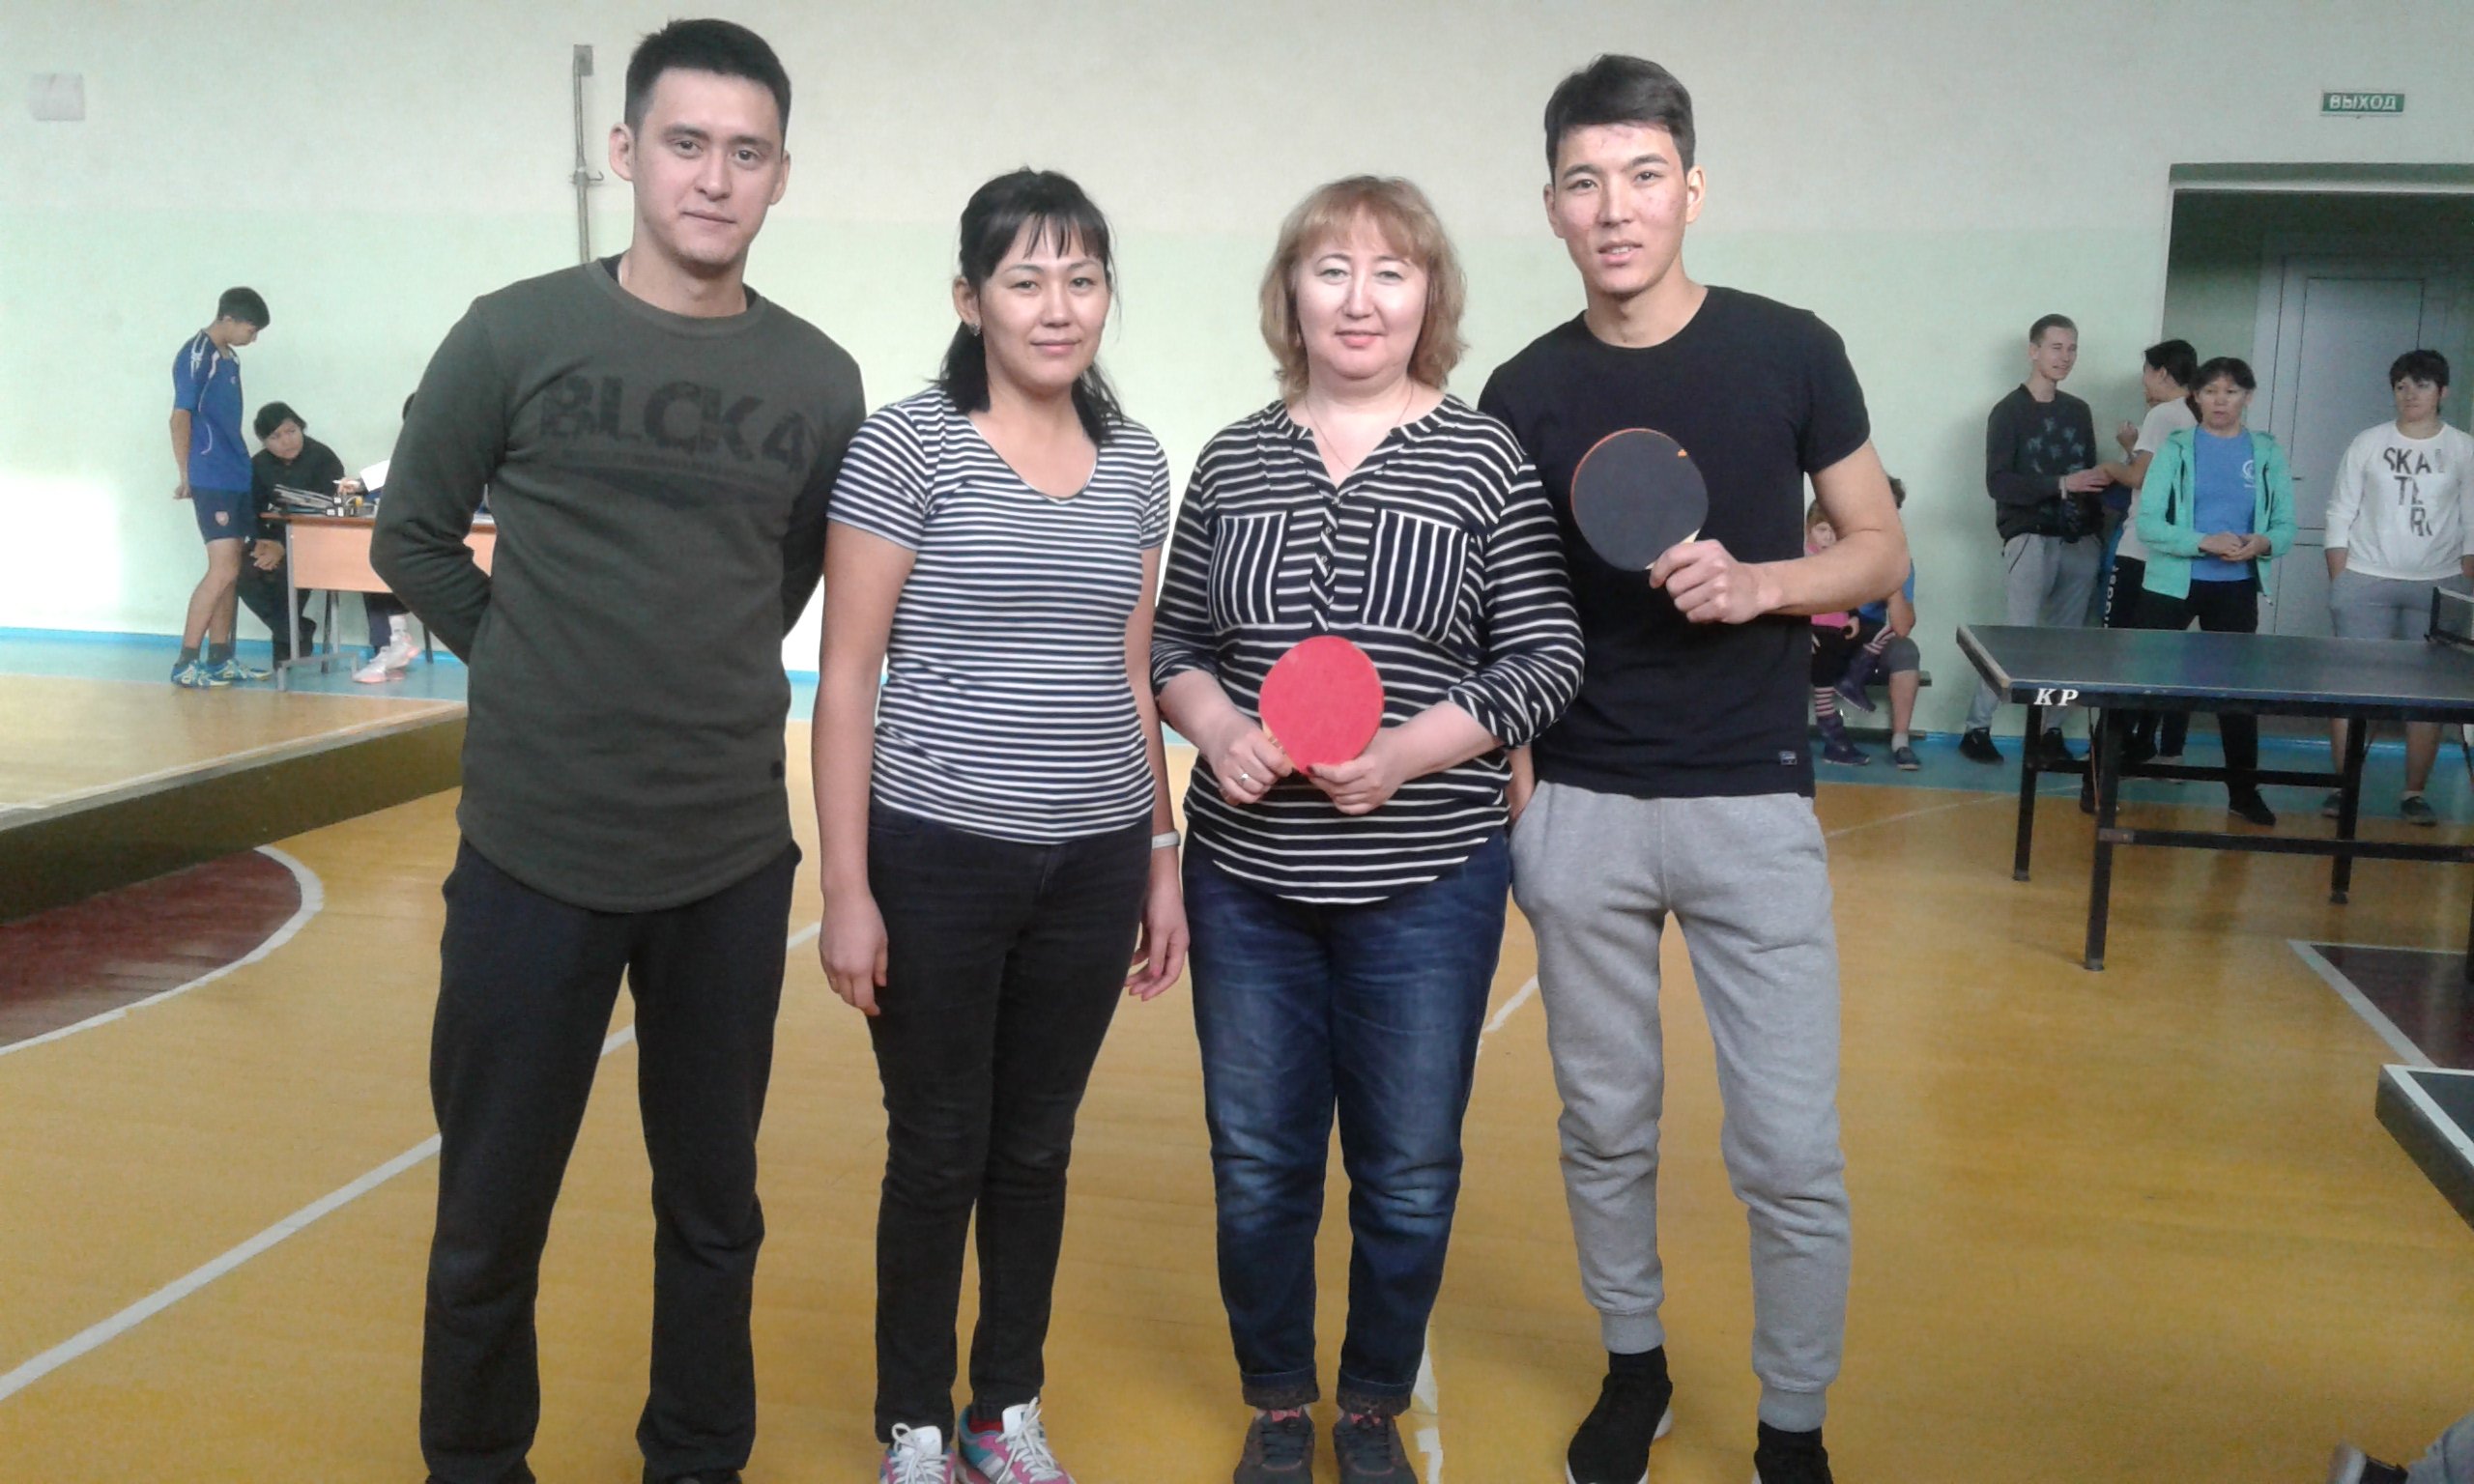   28 октября состоялись соревнования по настольному теннису среди сотрудников медицинских организаций по Павлодарской области.  